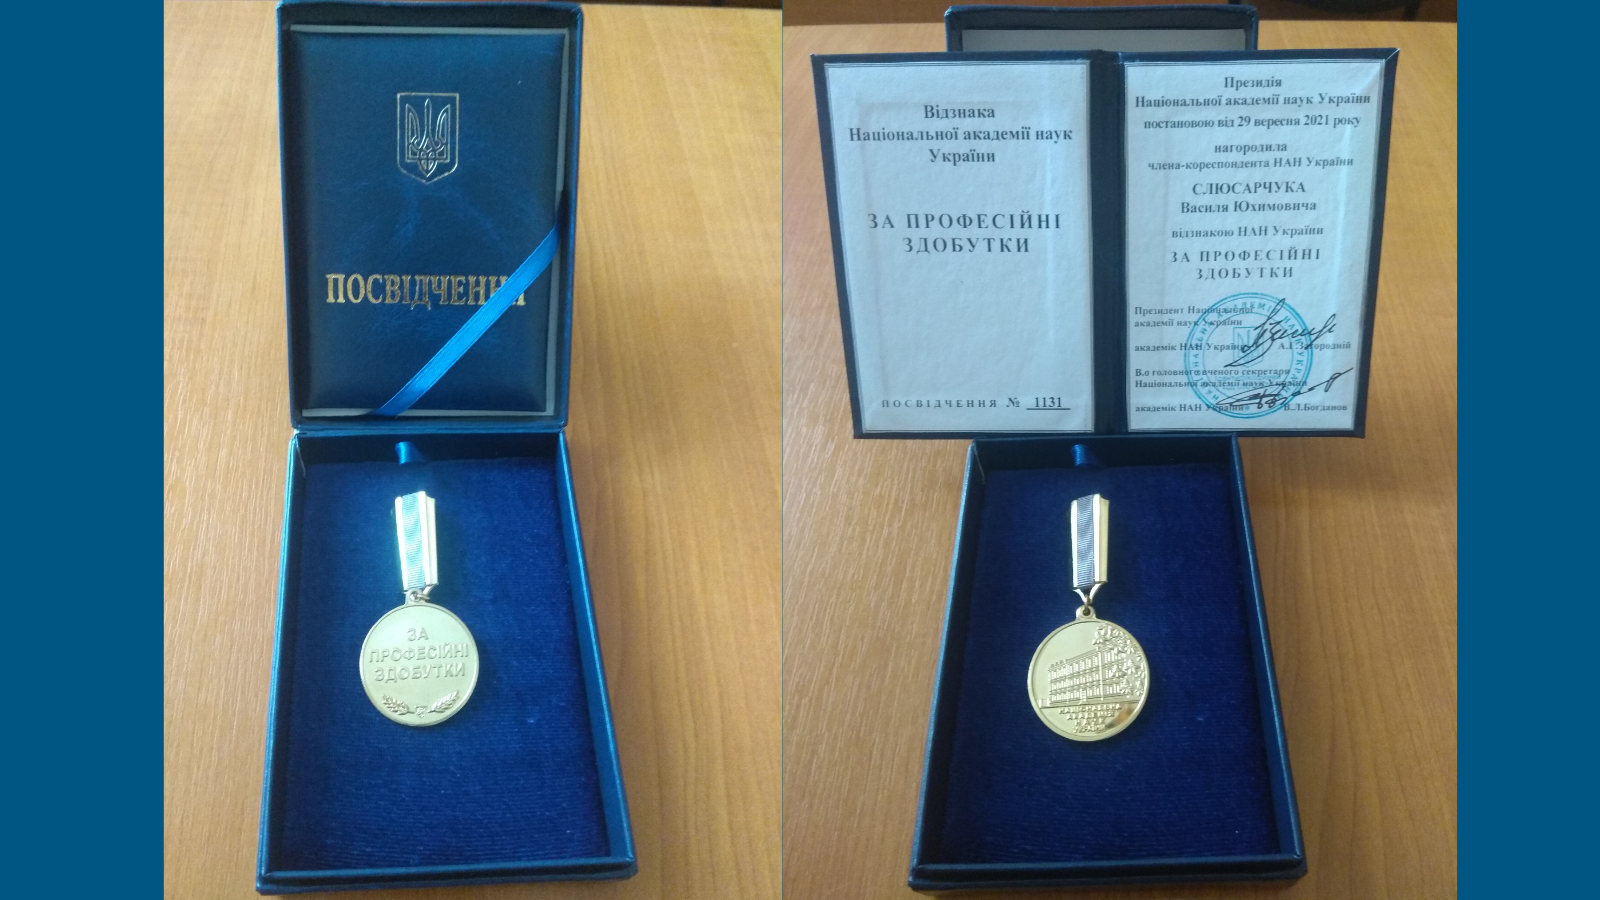 Нагорода НАН України